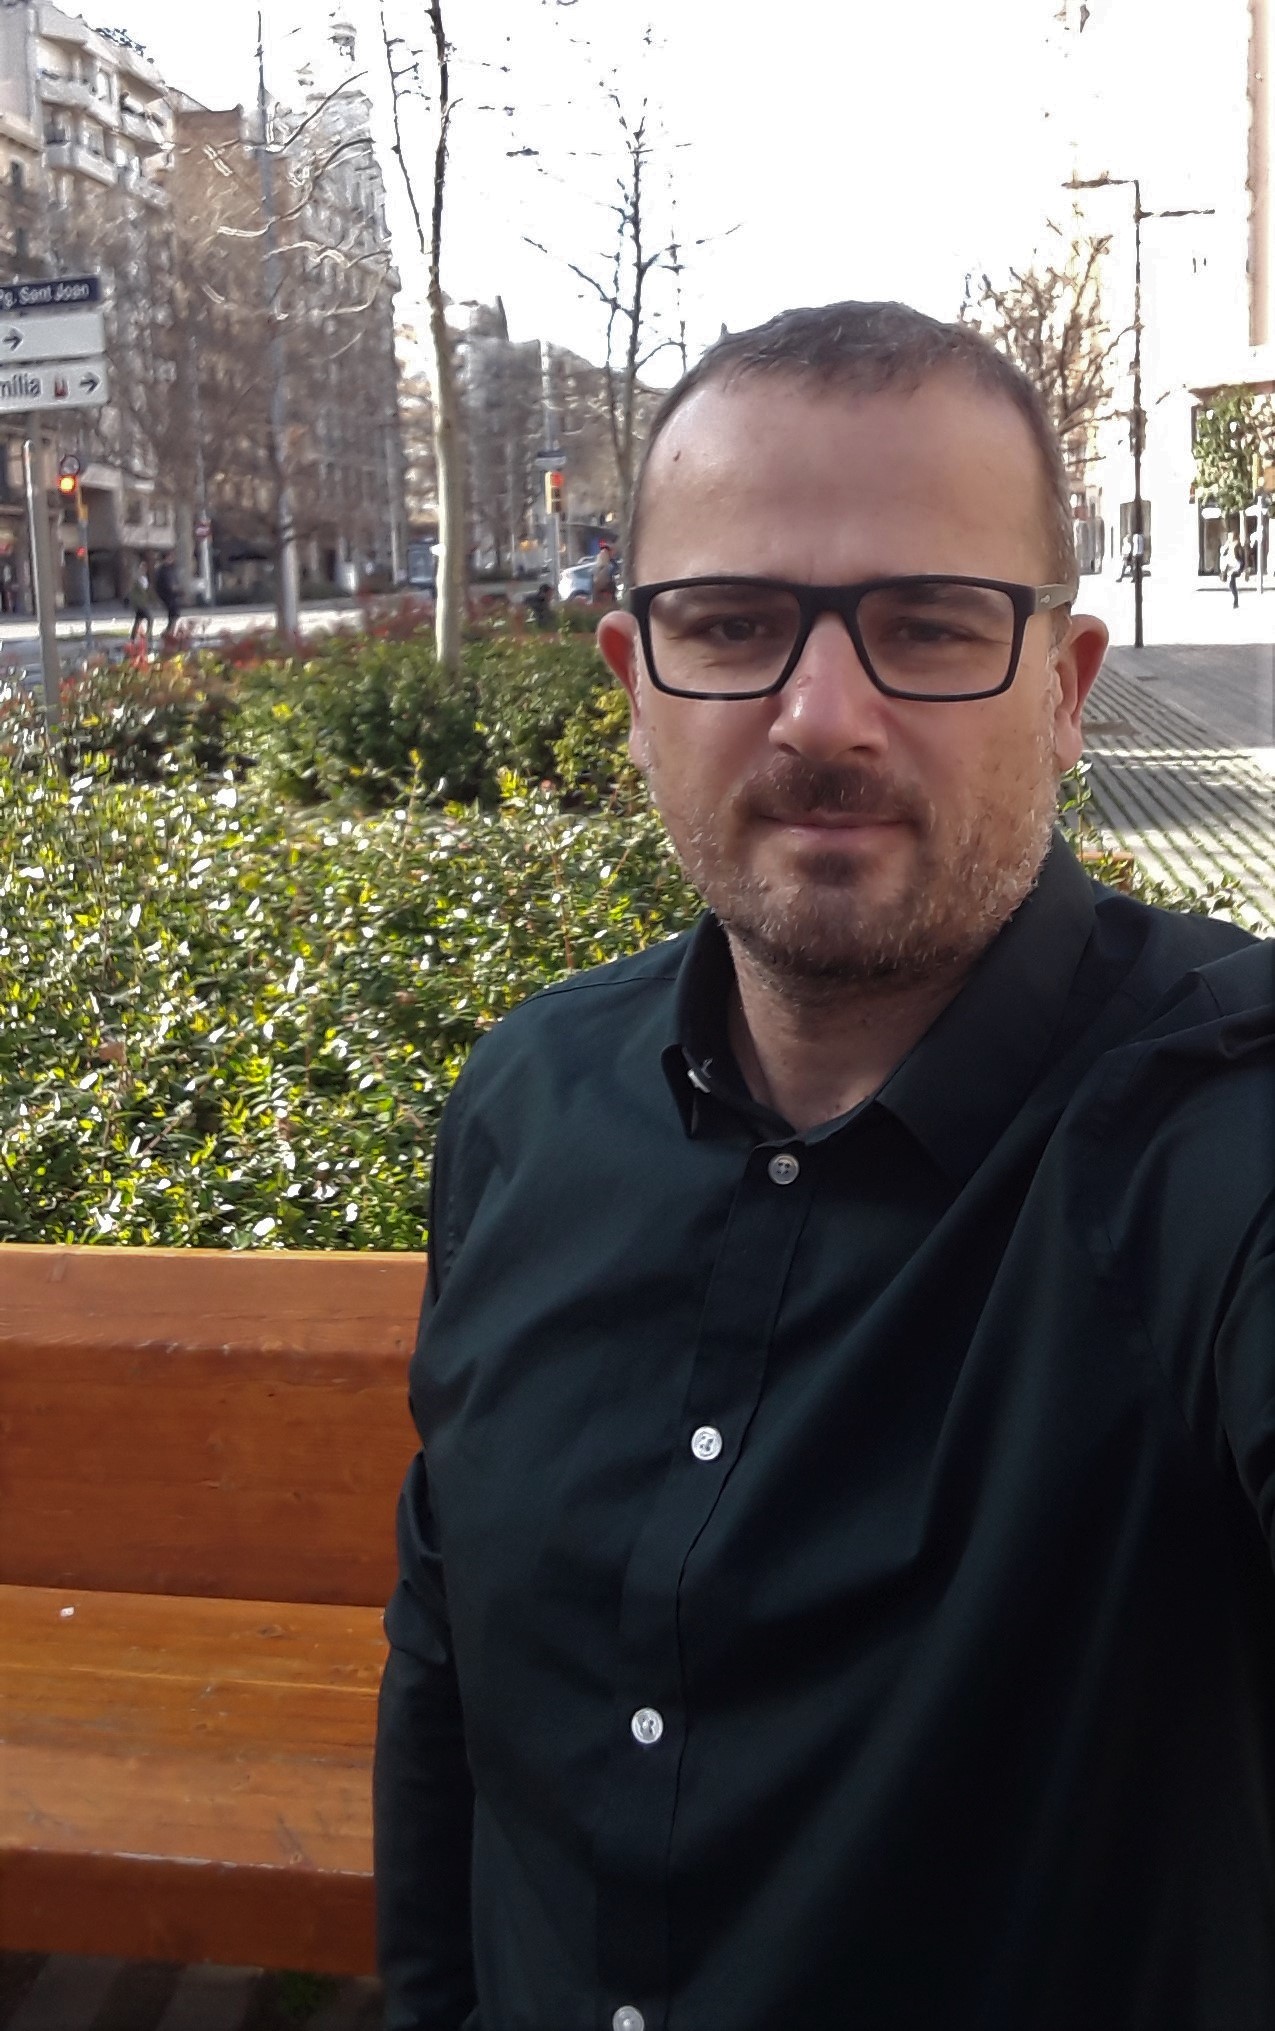 Exklusiv intervju med Dani Alsina från Barcelona – staden som gav gatorna tillbaka till människorna med hjälp av superblocks